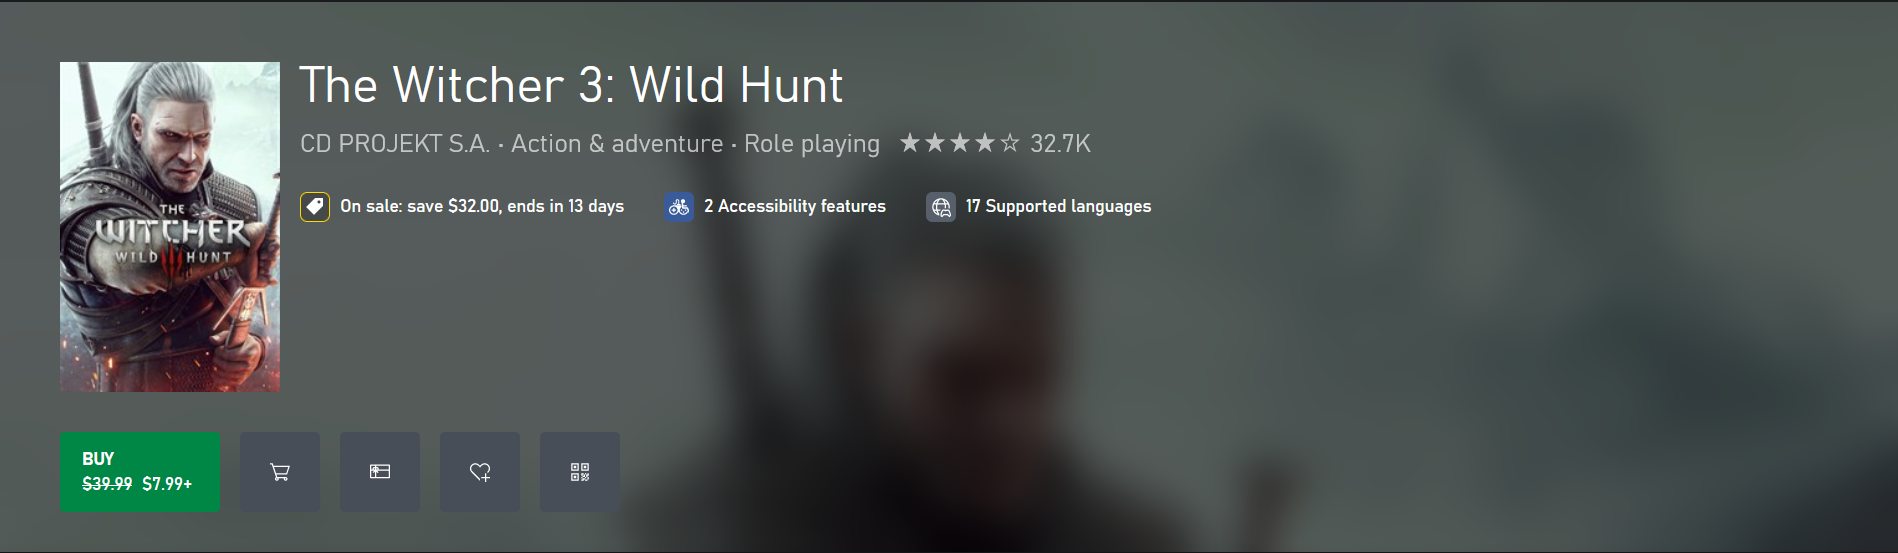 Es hora de nuevos cambios: CD Projekt Red actualiza las carátulas de The Witcher 3: Wild Hunt en las tiendas digitales de PlayStation, Xbox y Steam-3